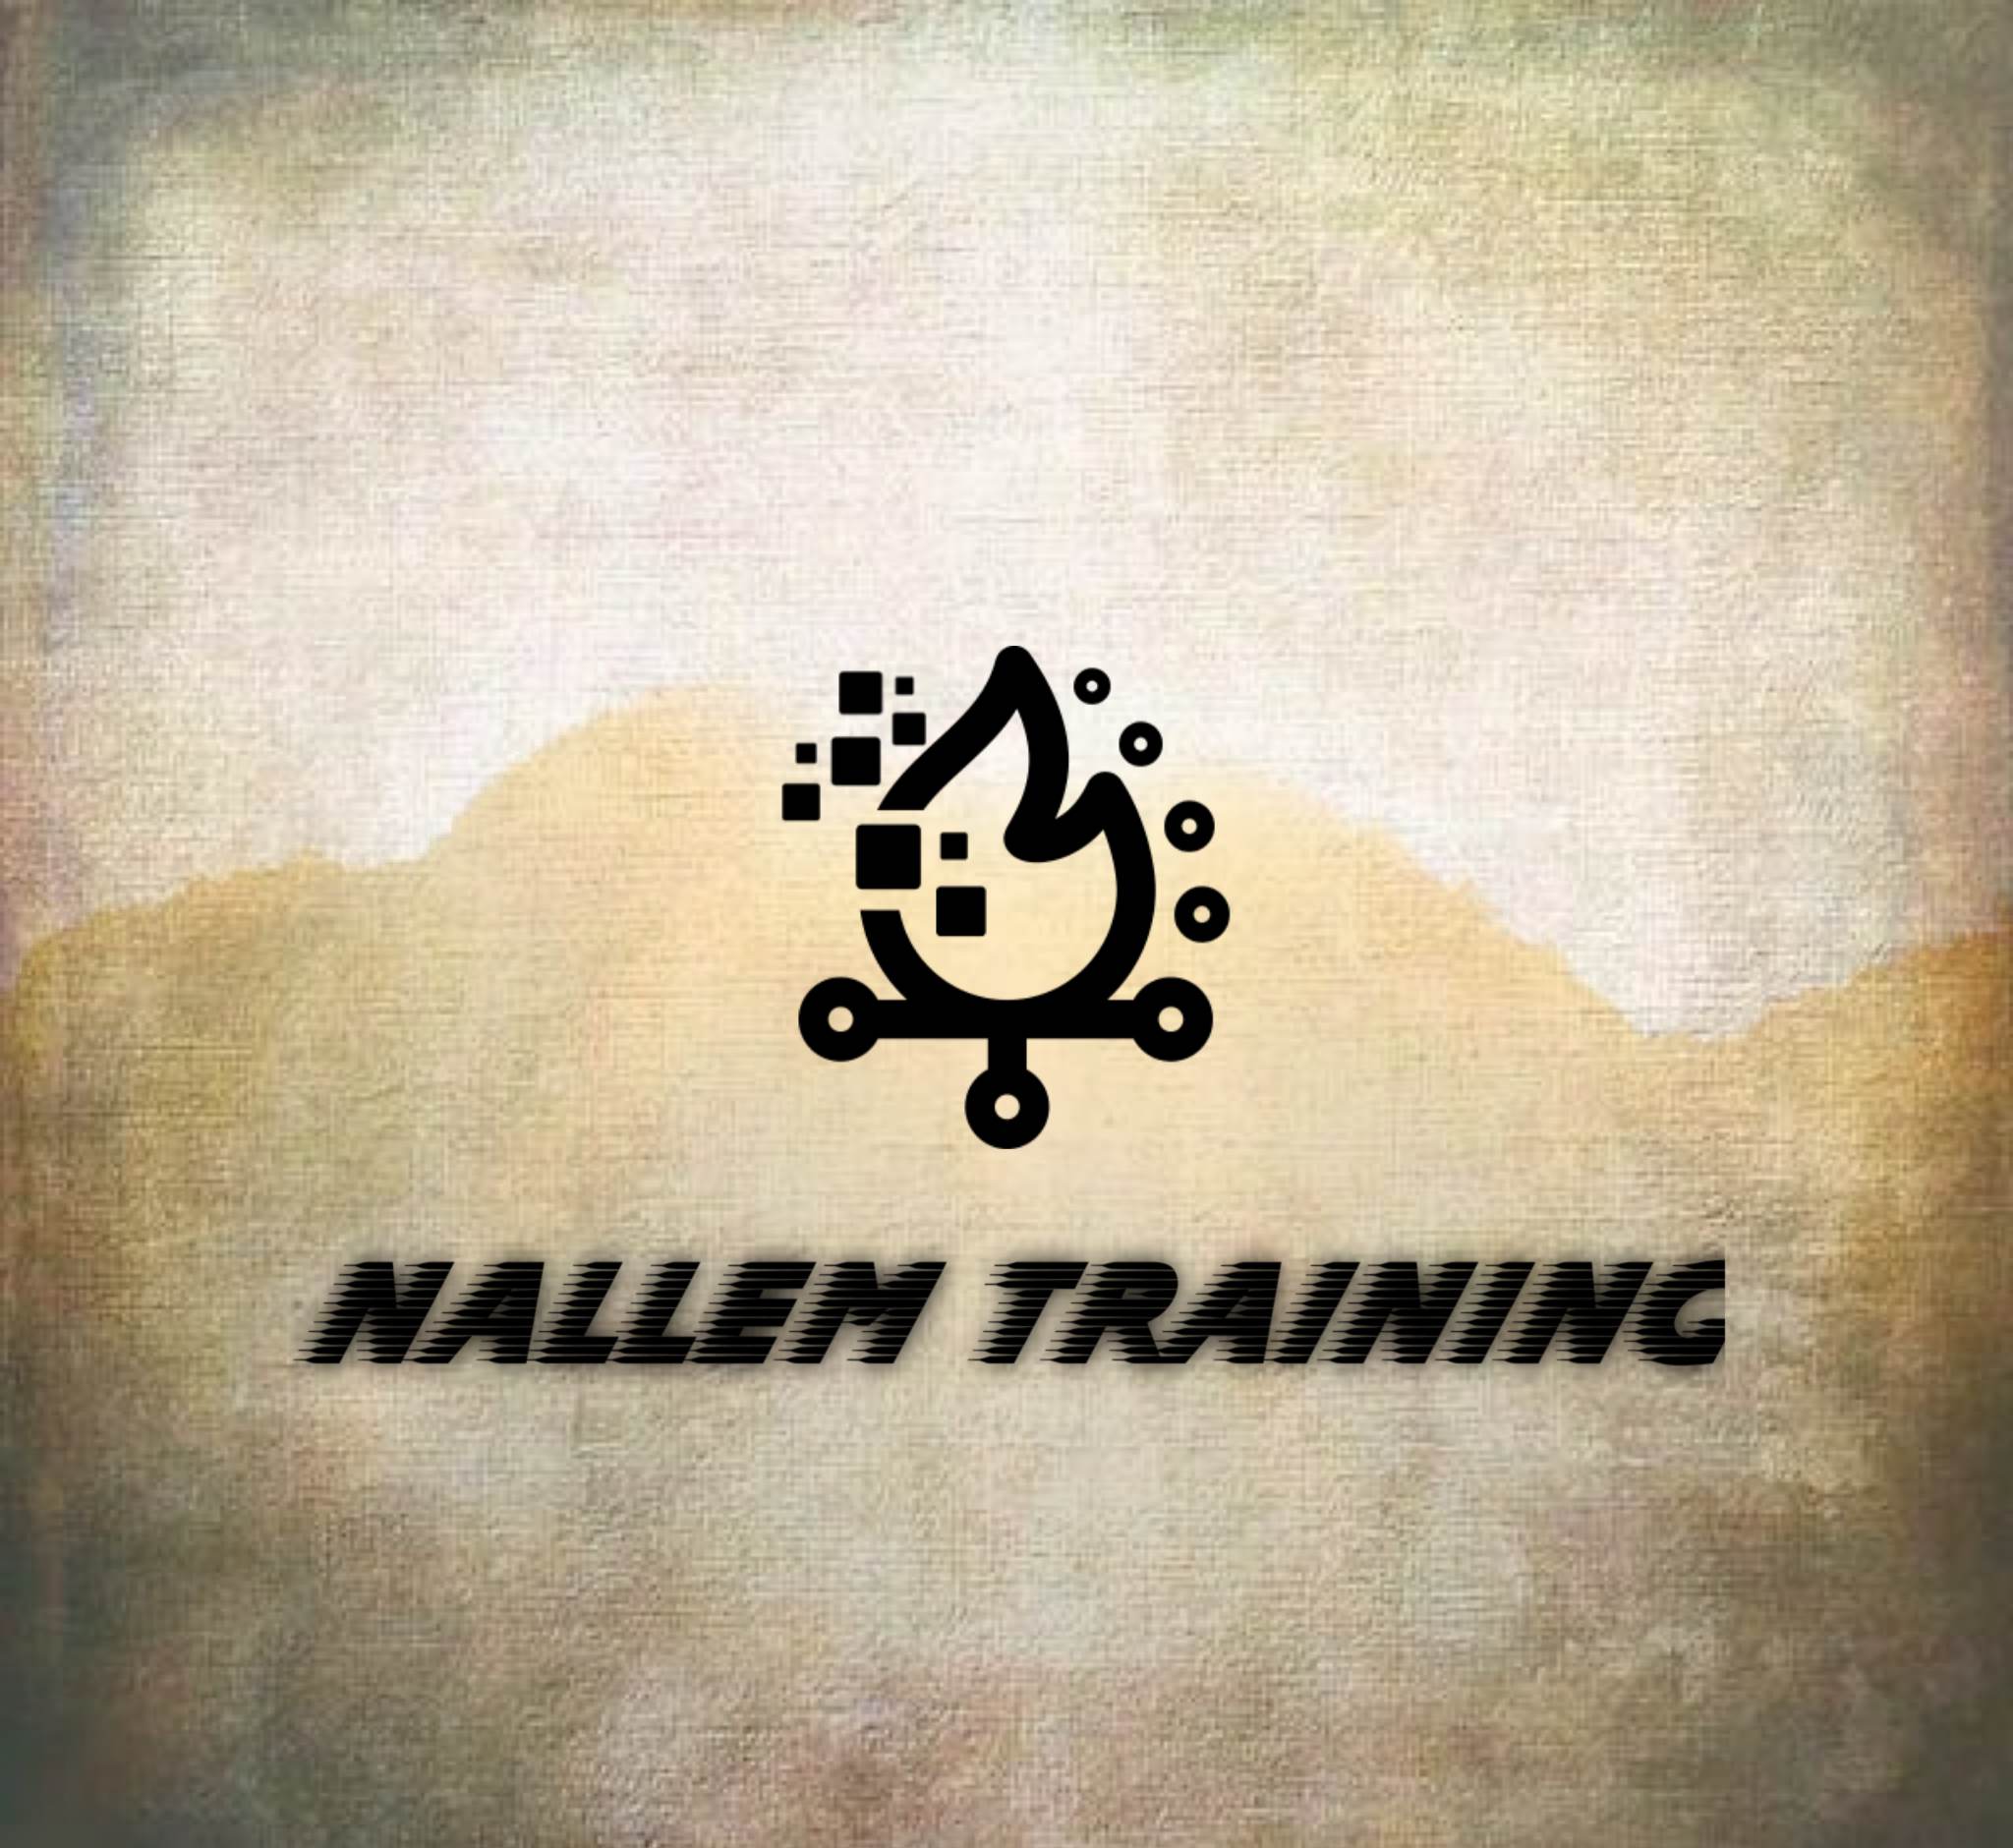 Nallem Training